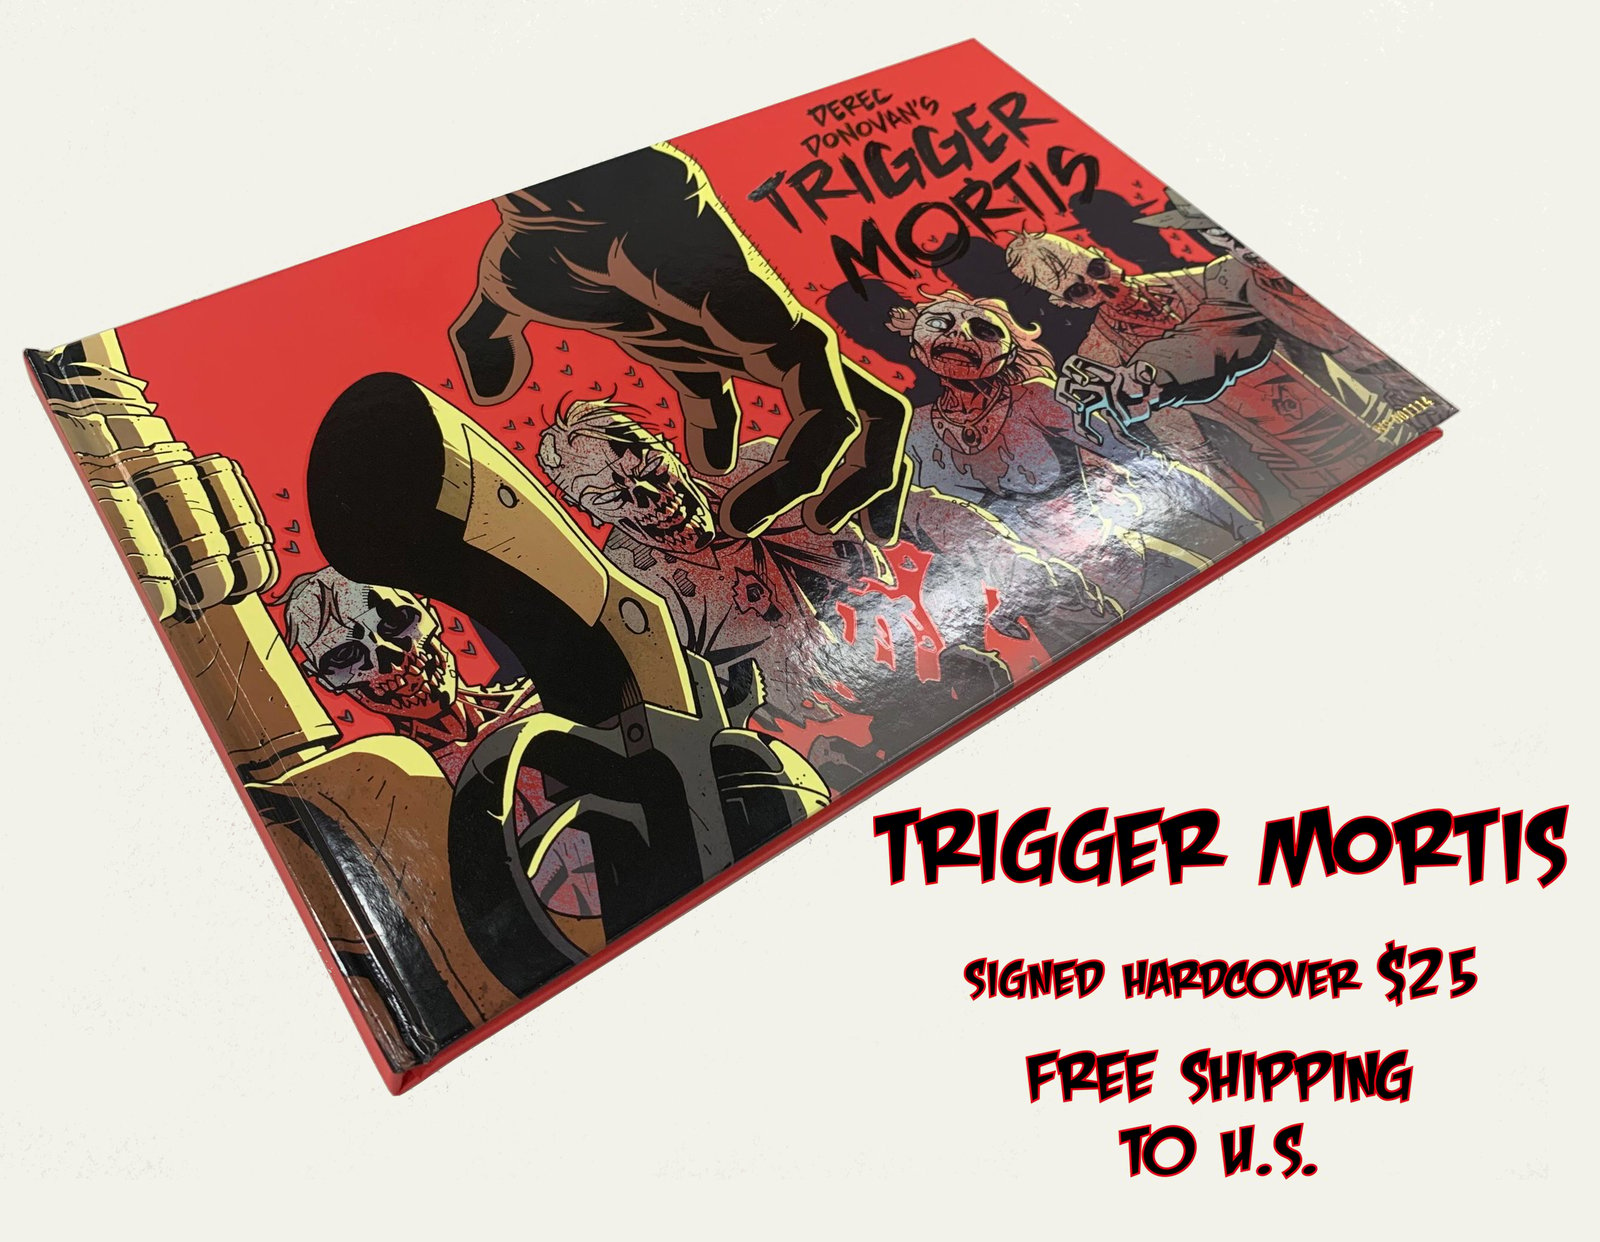 trigger mortis 2015 novel